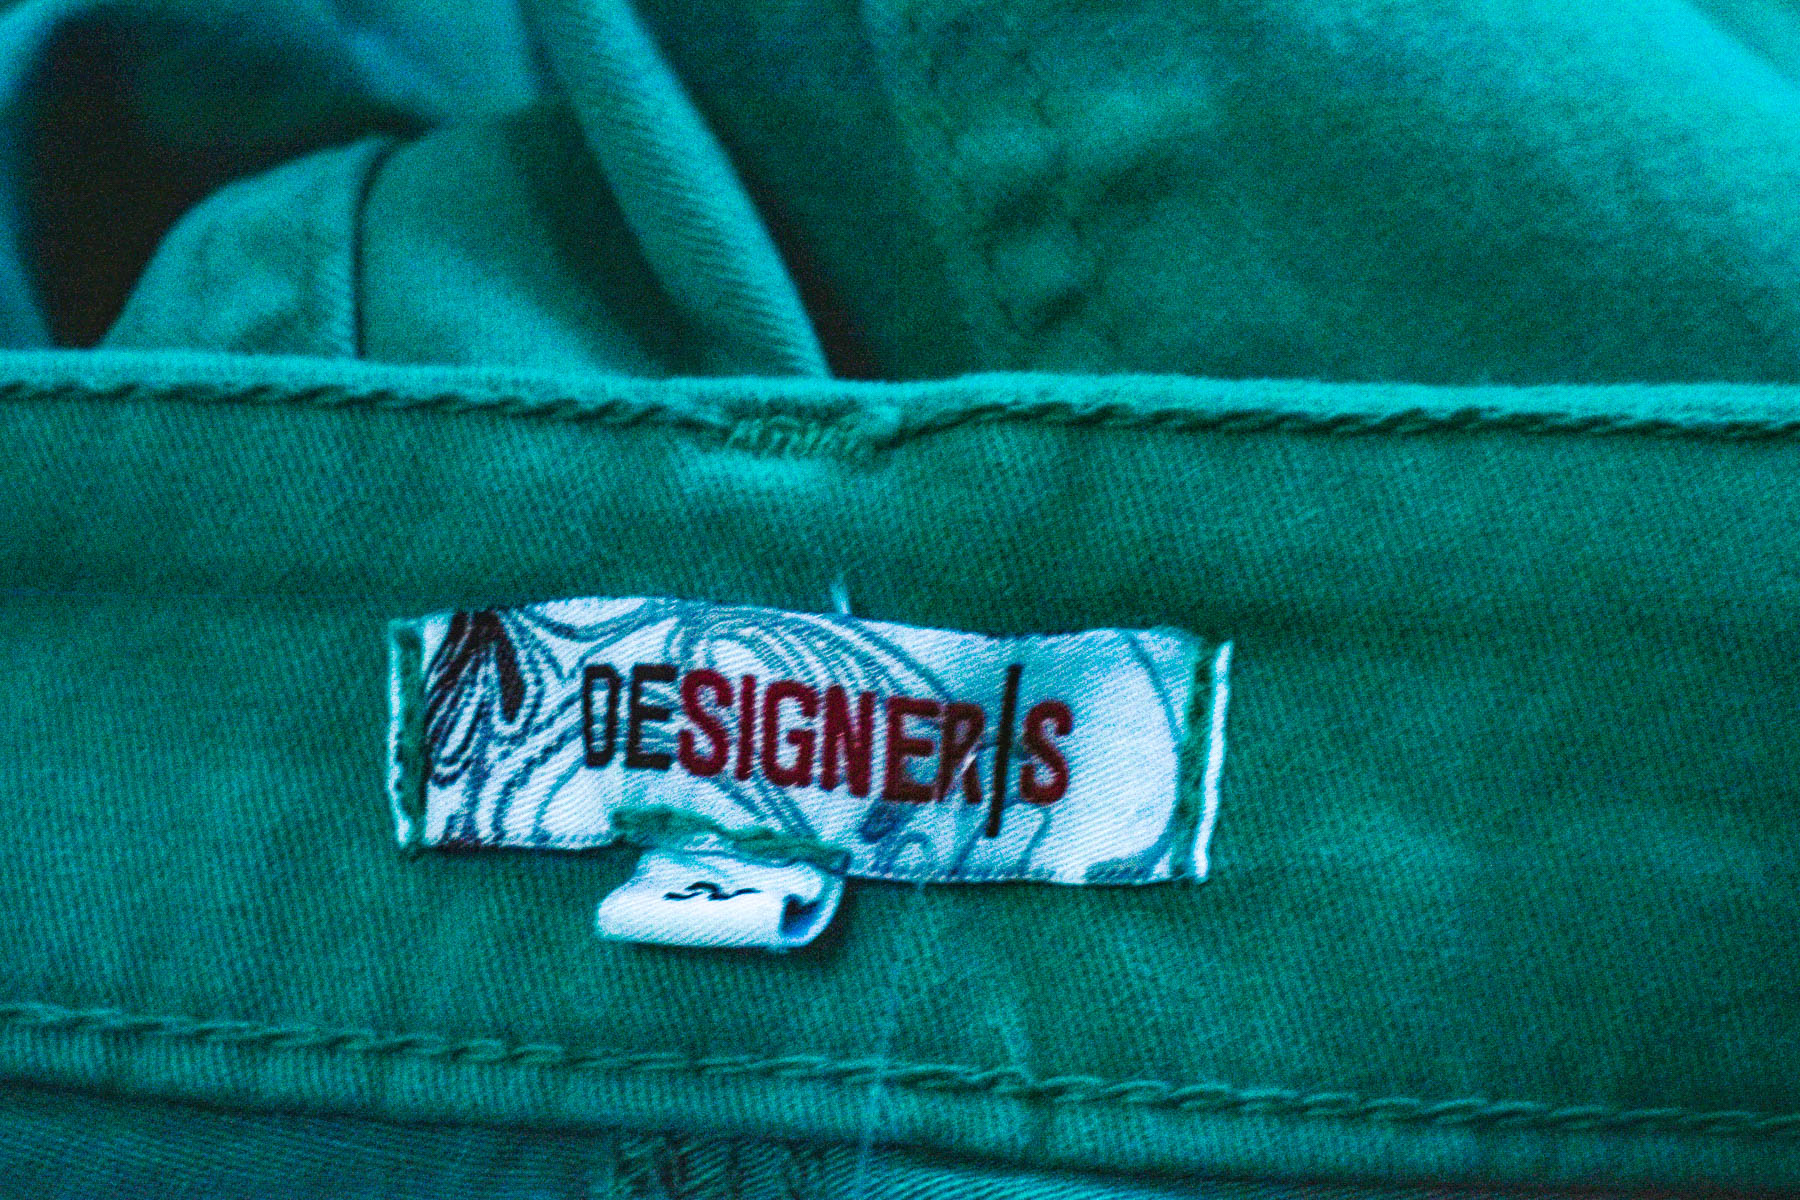 Women's trousers - DESIGNER|S - 2